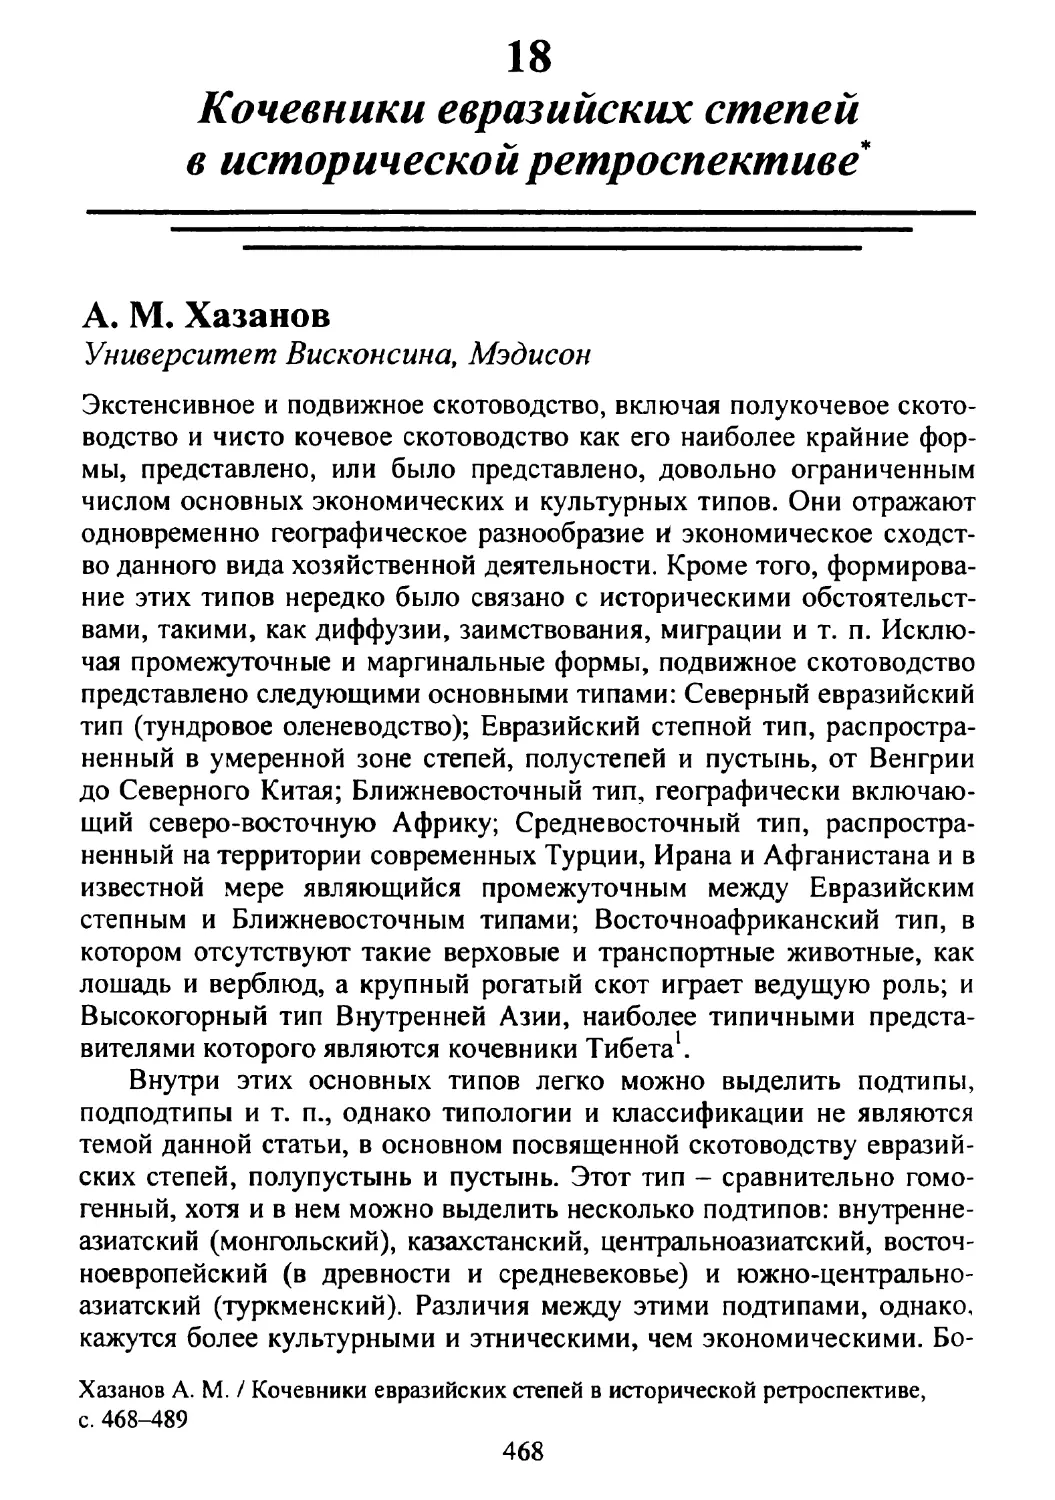 А.М. Хазанов. Кочевники евразийских степей в исторической ретроспективе